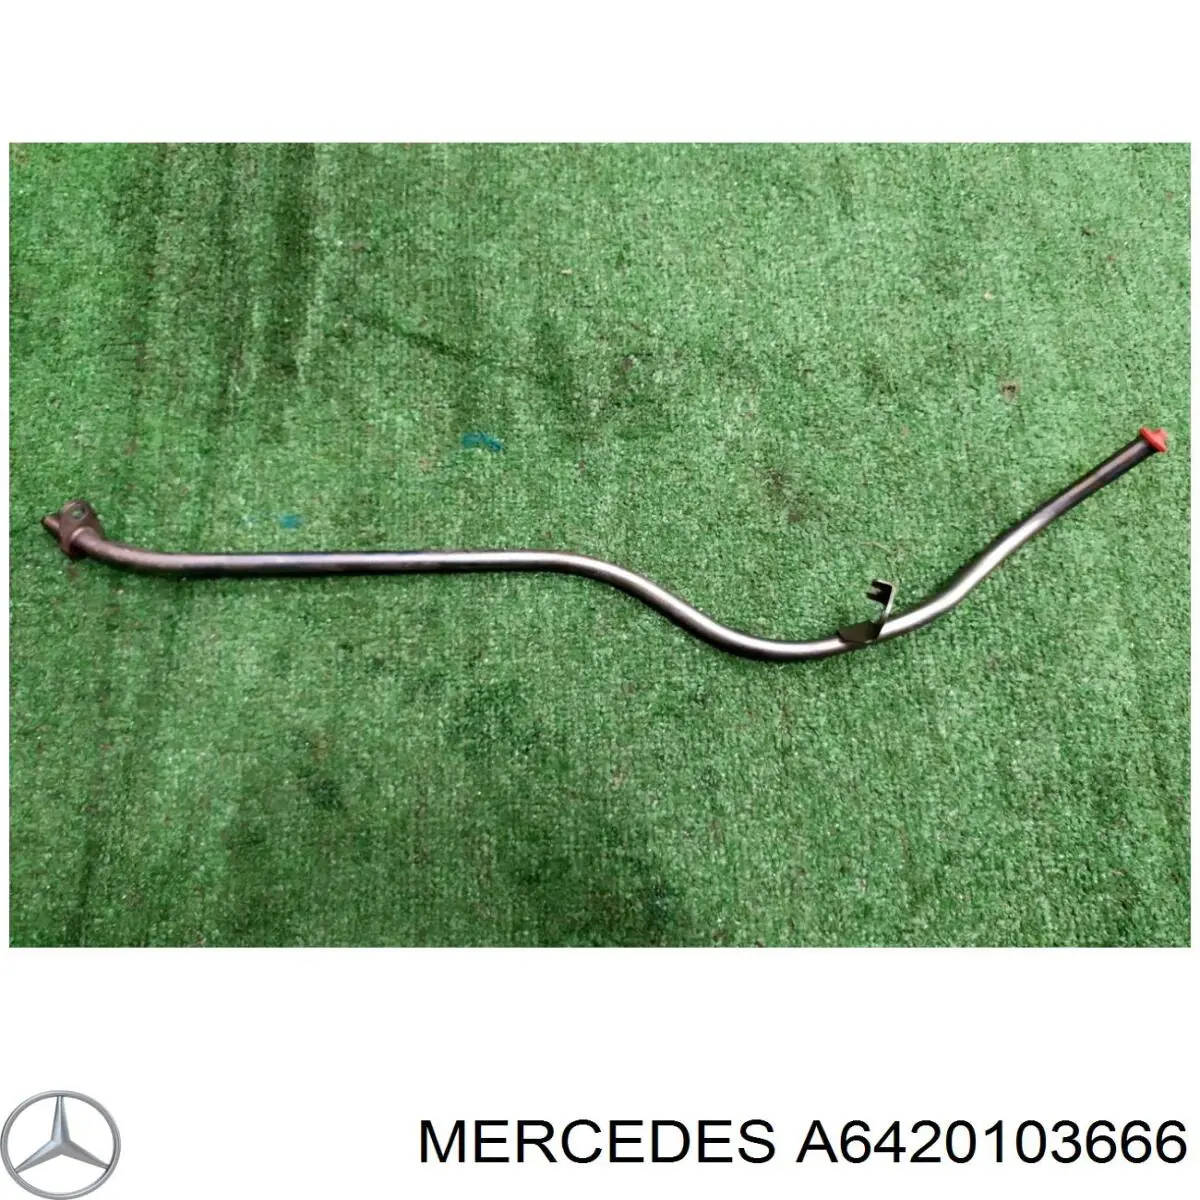 Направляющая щупа-индикатора уровня масла в двигателе на Mercedes GL-Class (X166)